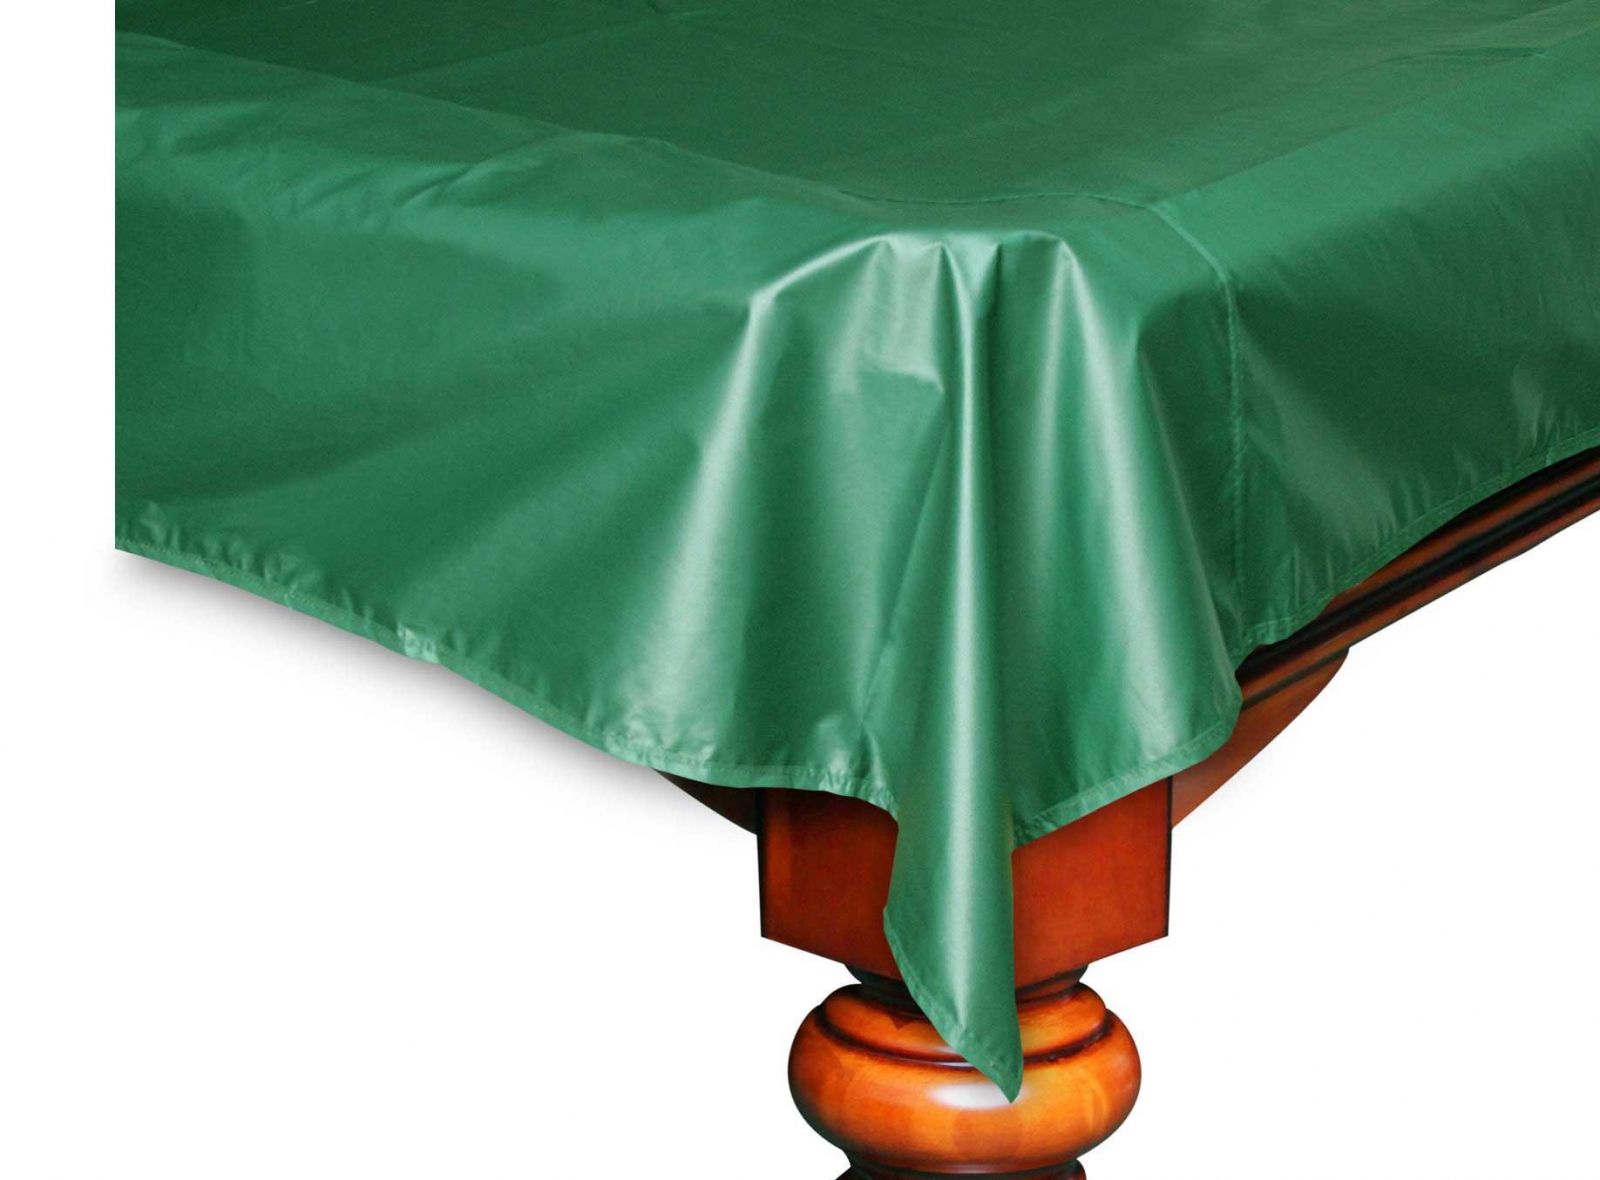 Бильярдный чехол. Чехол для бильярдного стола 12 футов. Чехол на бильярдный стол 10 футов. Накидка на бильярдный стол 12 футов. Покрывало Венеция для бильярдного стола 12 футов, шелк, цвет зеленый.